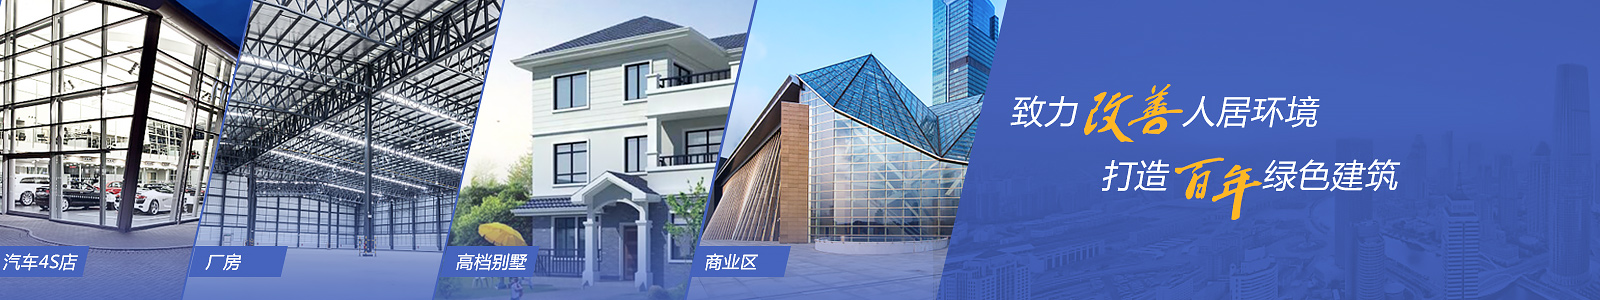 江津·橋南建設-致力于改善人居環境打造百年綠色建筑